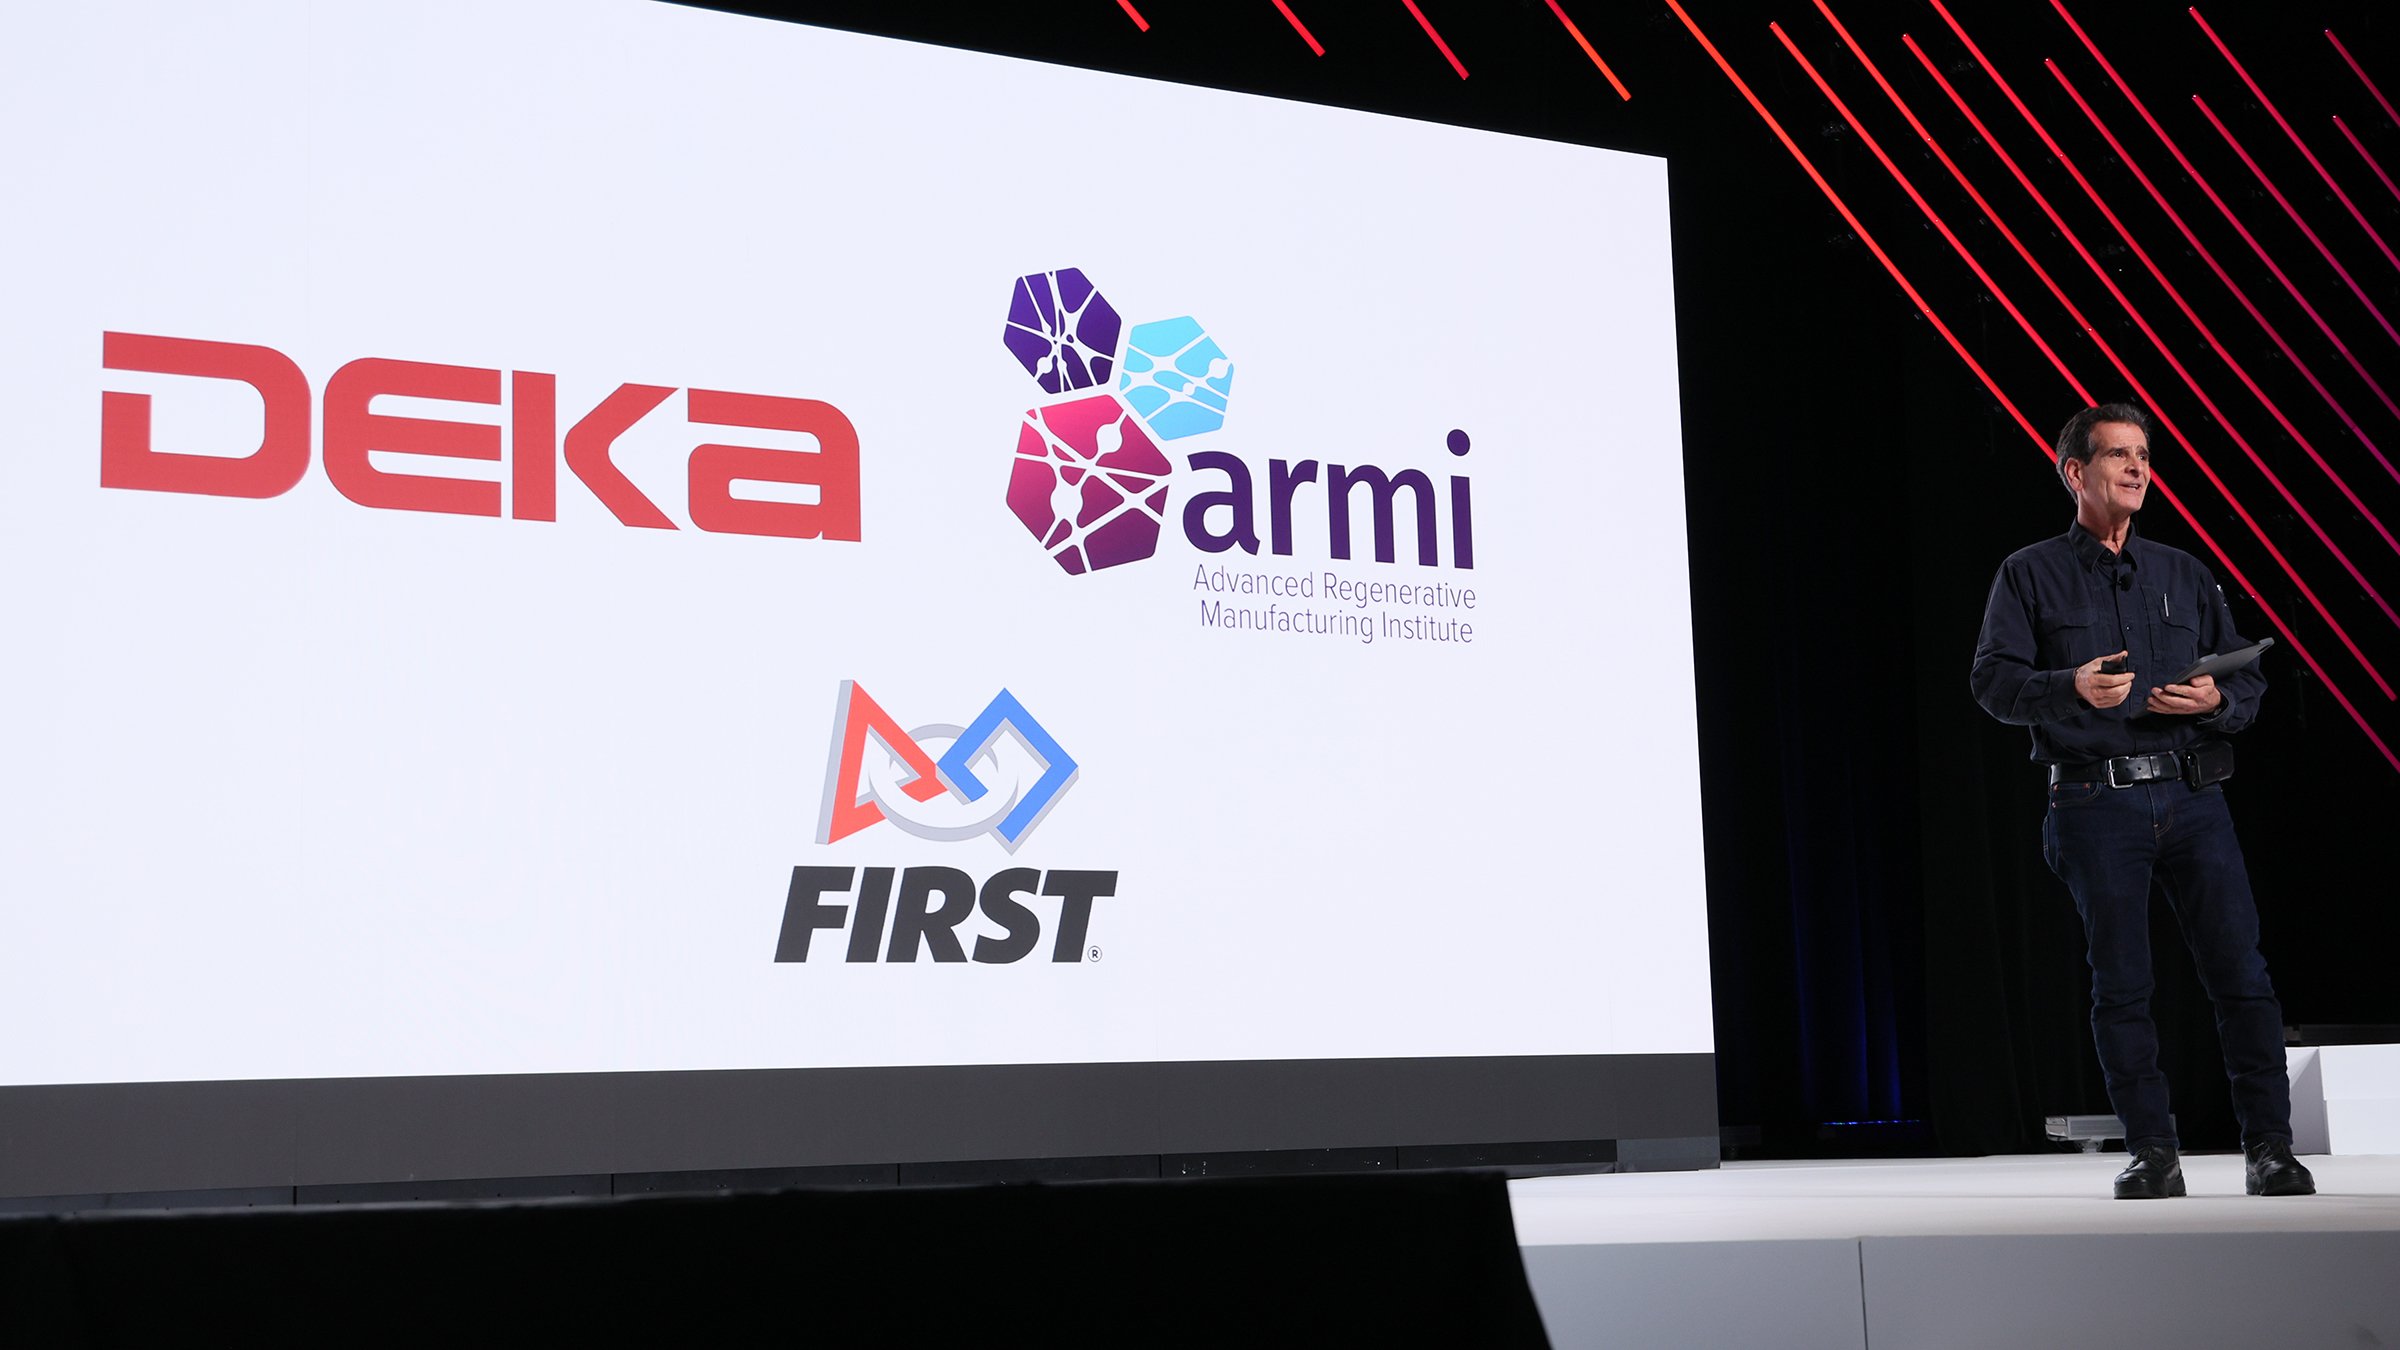 Automation Fair 2023 Keynote Dean Kamen